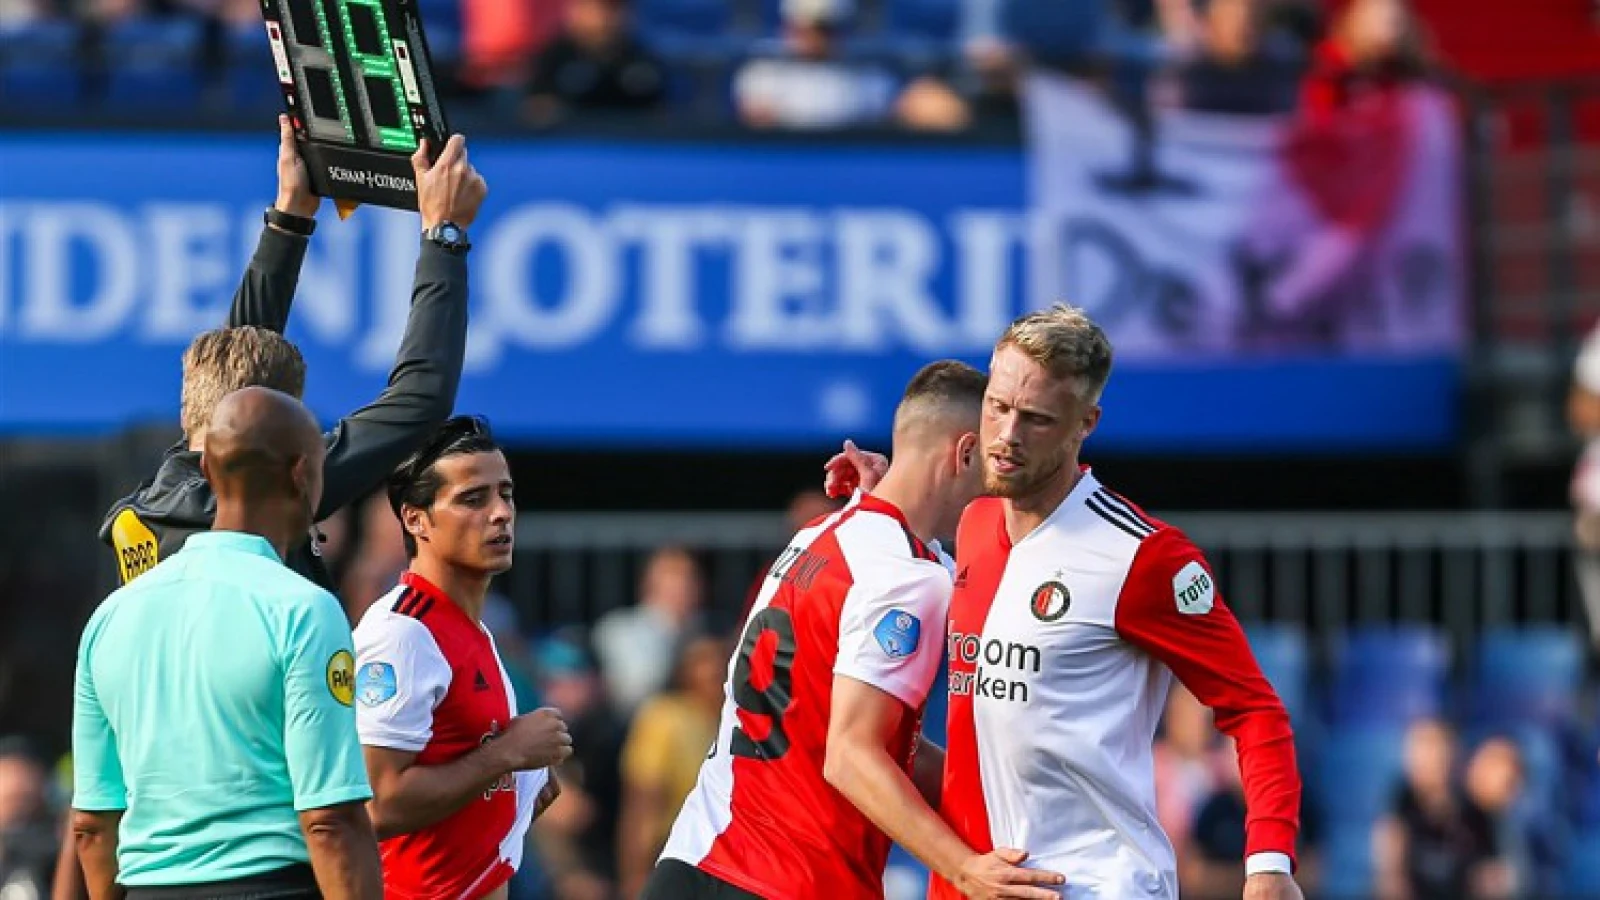 PraatMee | Moet Feyenoord nog versterking halen in de voorhoede?